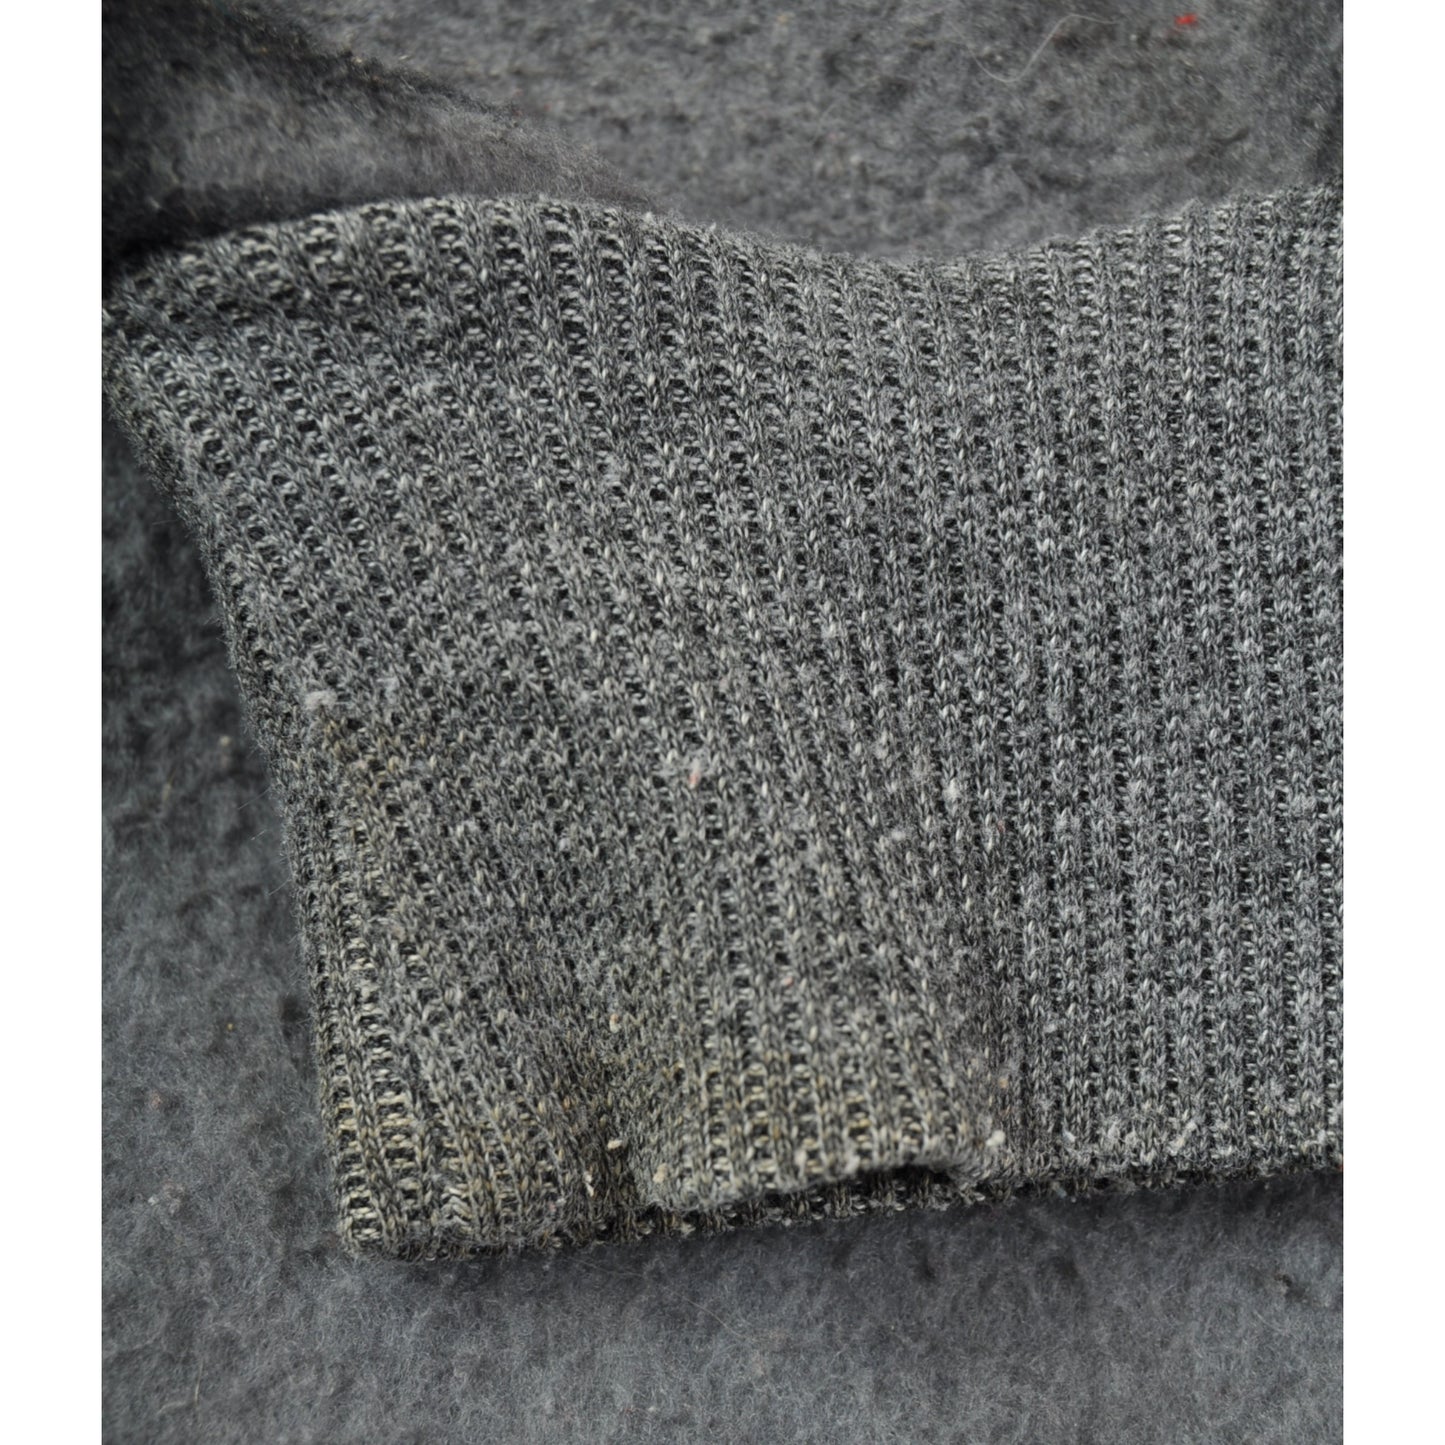 Vintage Fleece Jacket Retro Moose Pattern Grey Ladies XL